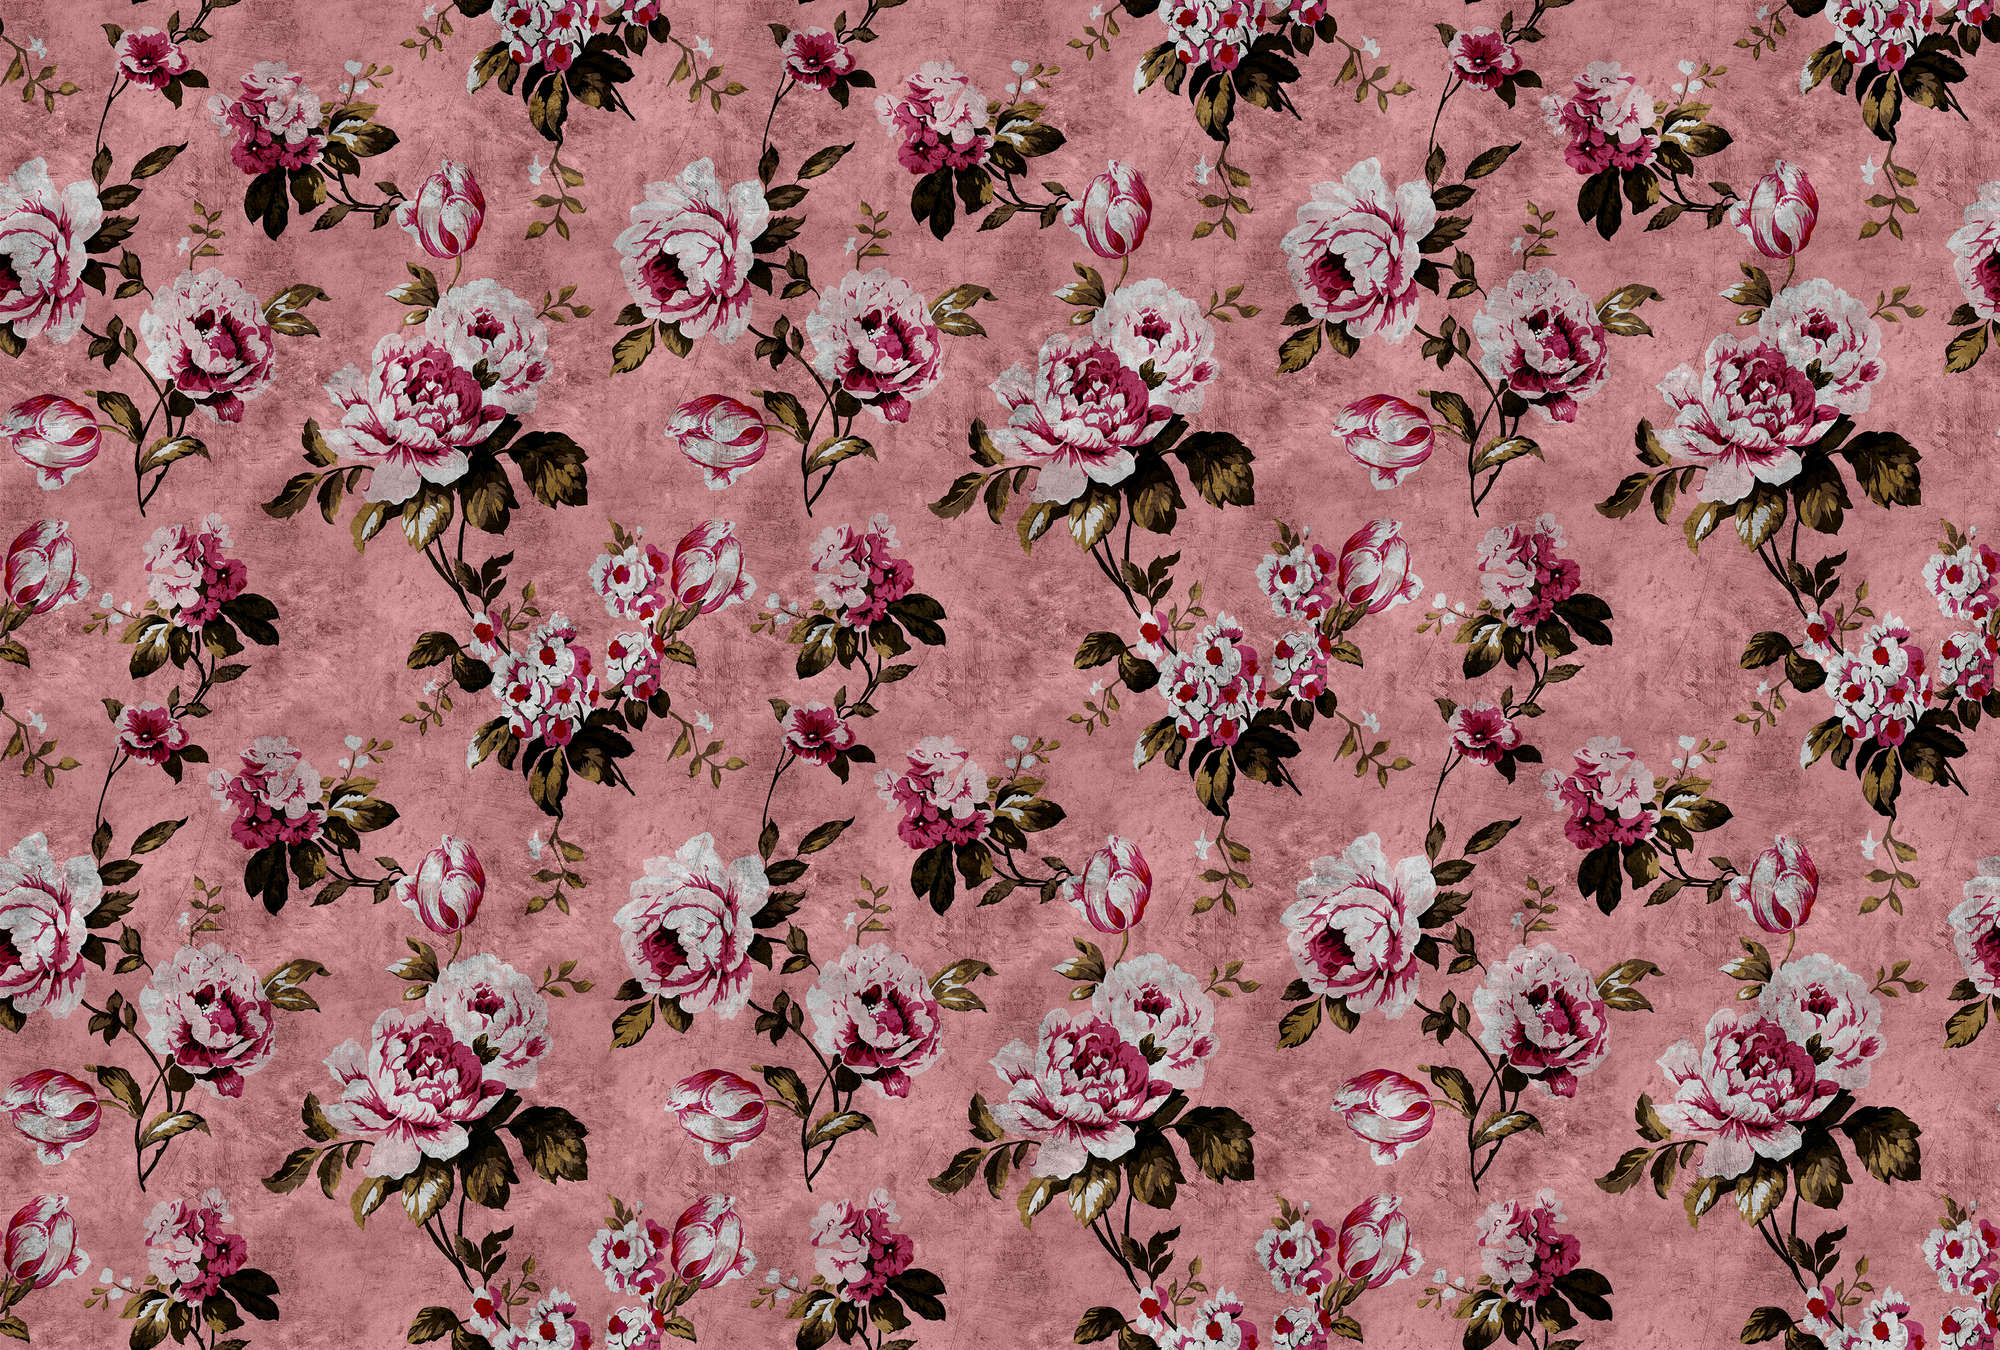             Wilde rozen 4 - Rozen fotobehang in retro look, roze in krasstructuur - Roze, Rood | Premium glad vliesdoek
        